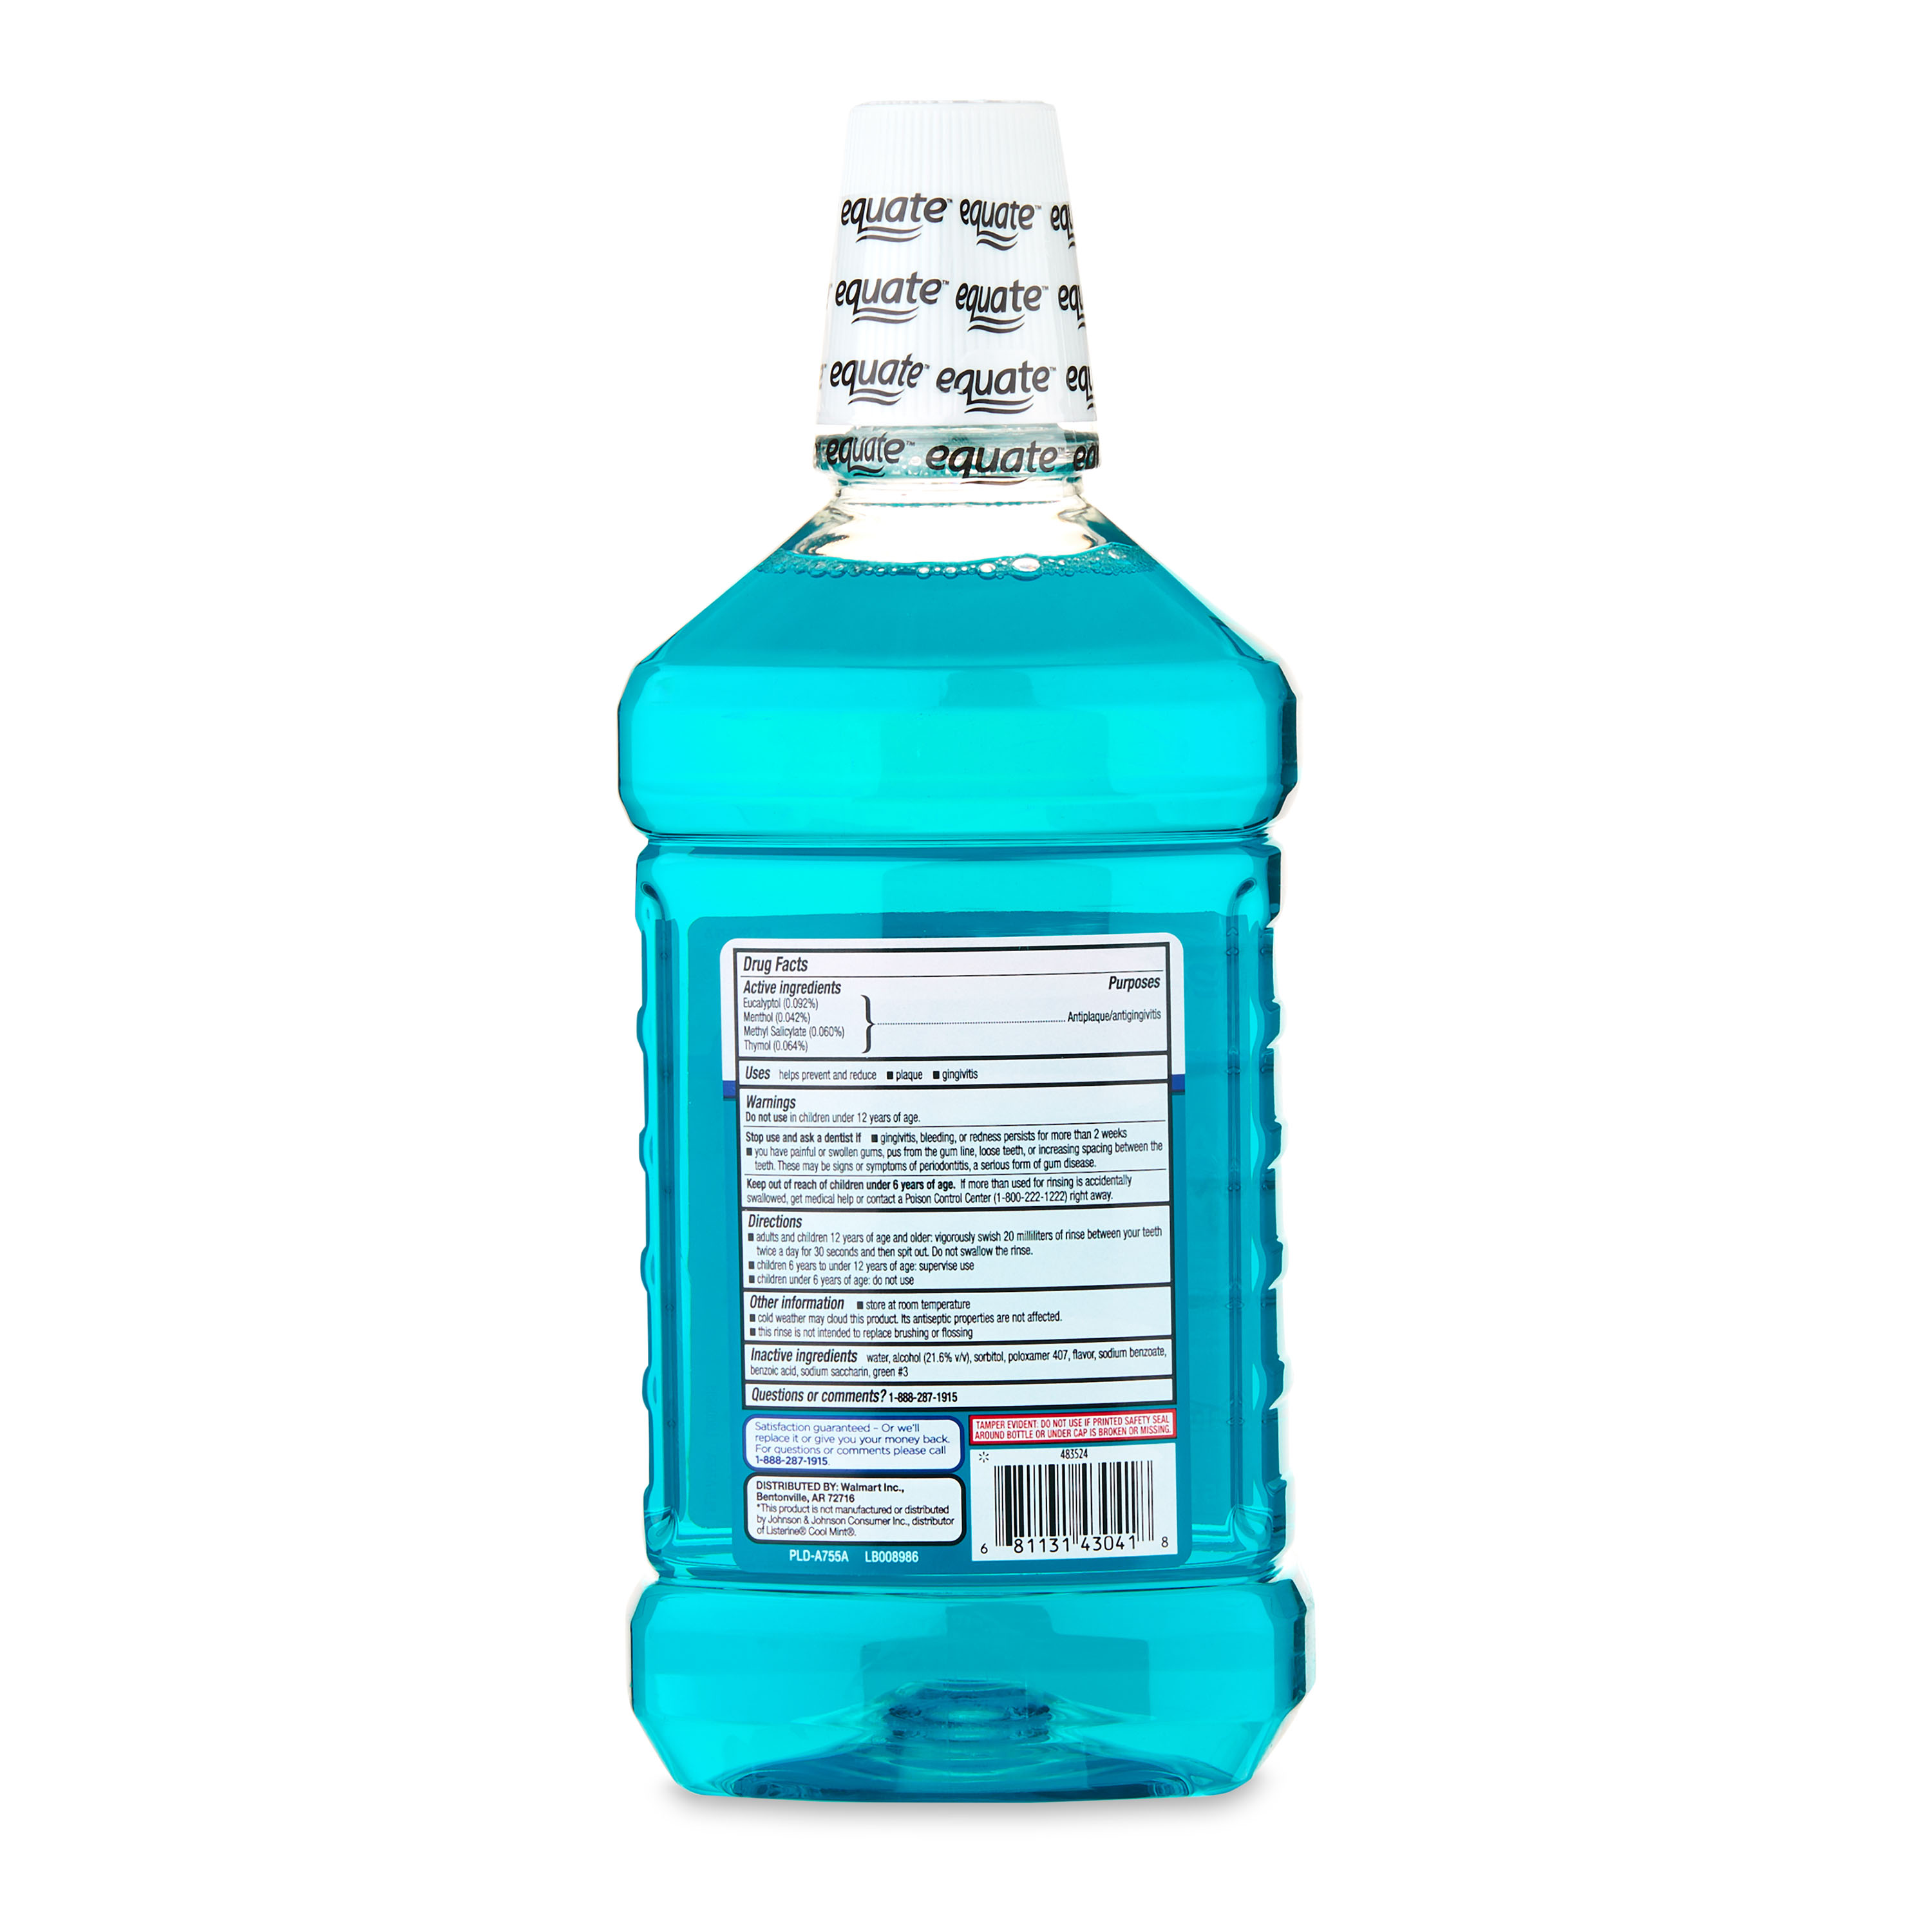 Equate Antiseptic Mouthwash, Blue Mint, 50.7 fl oz - image 5 of 7